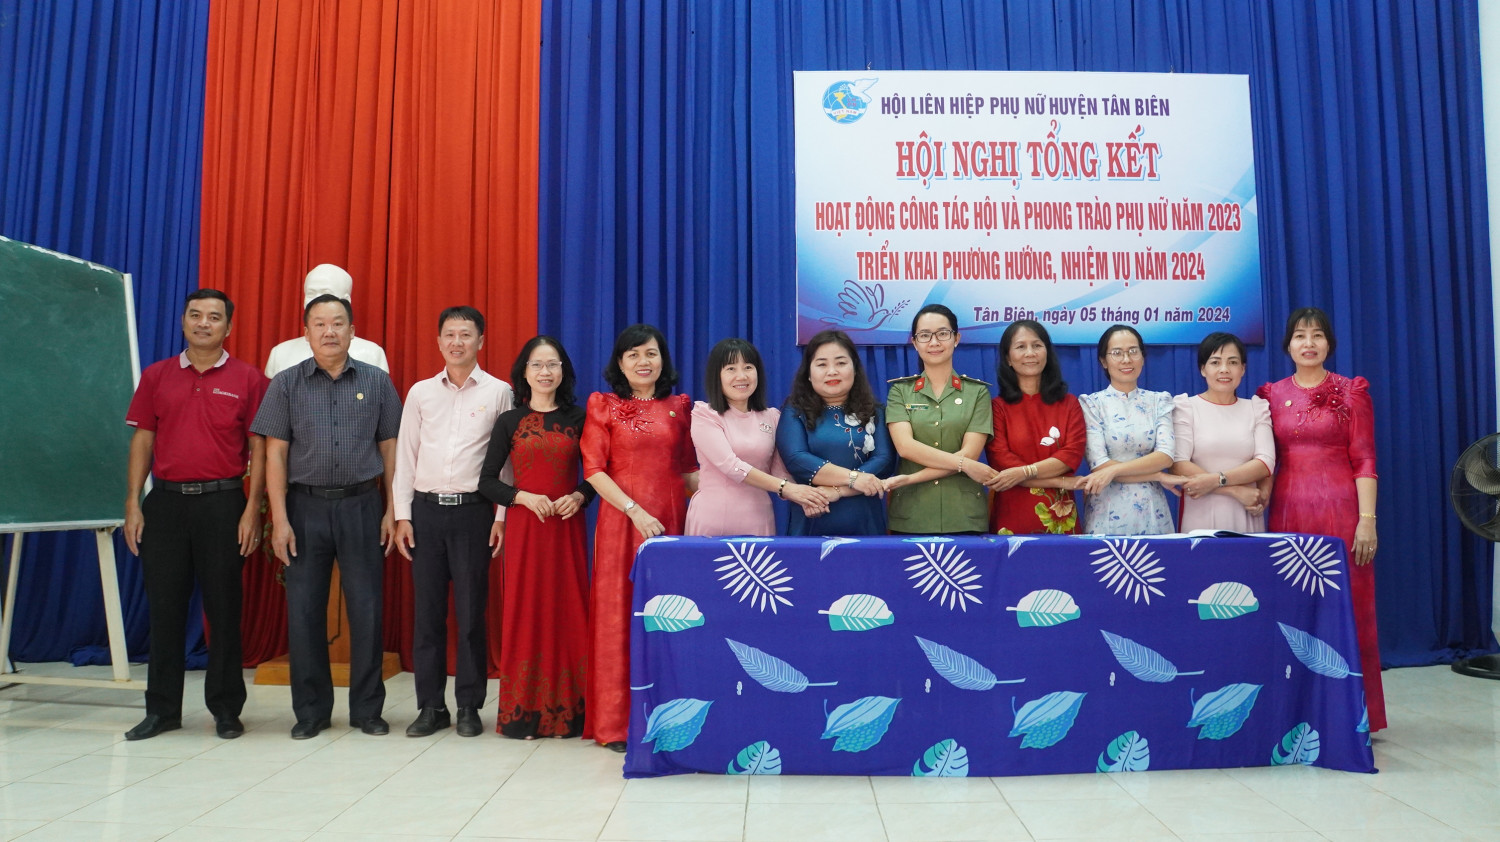 Hội LHPN huyện Tân Biên tổng kết công tác hội và phong trào Phụ nữ năm 2023,  triển khai nhiệm vụ năm 2024.